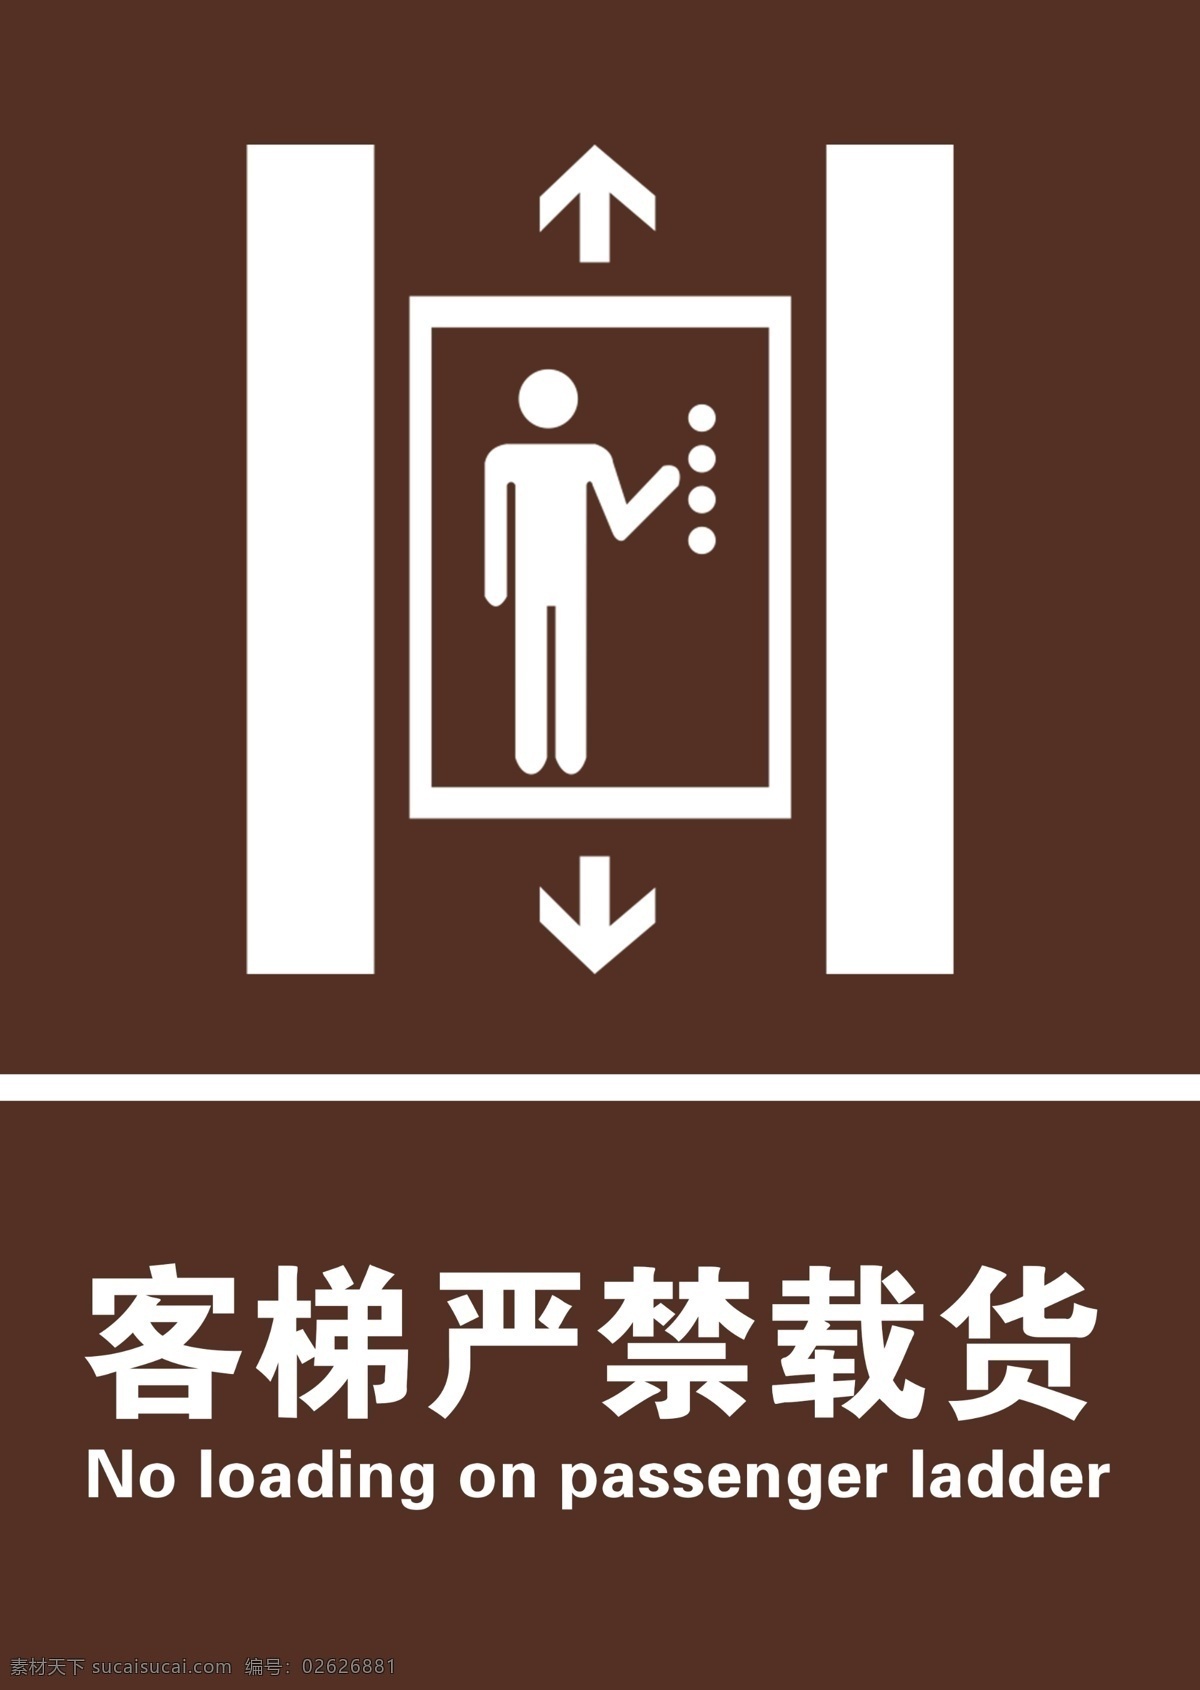 客梯标识 客梯严禁载货 温馨提示 提示 载货 咖色 客梯 电梯标识 提示牌 警告 分层